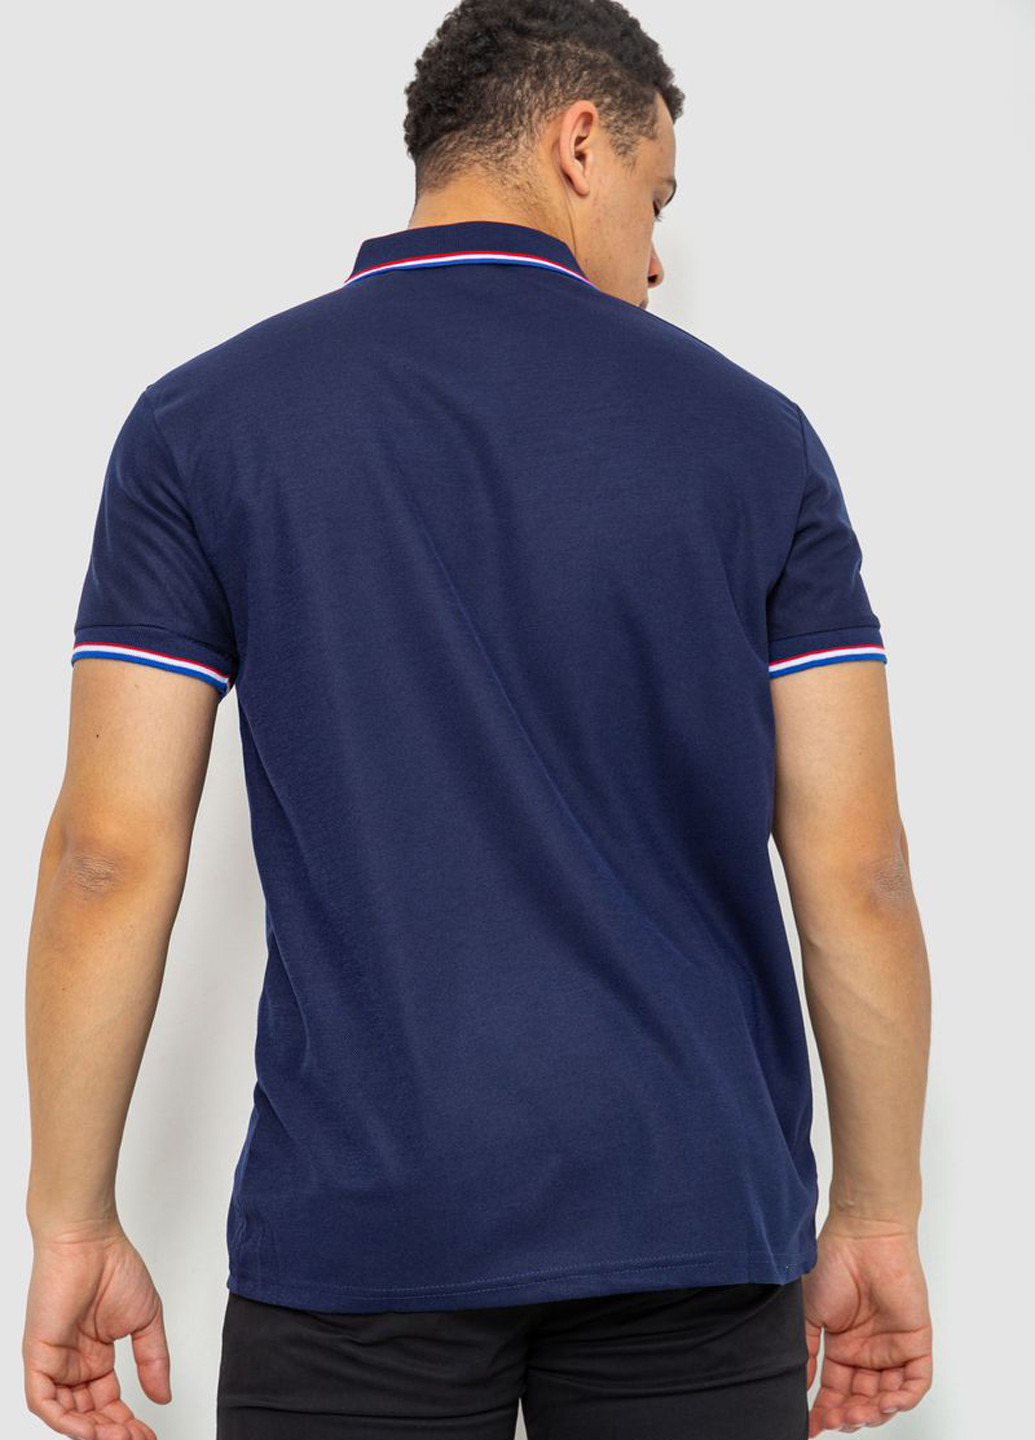 Темно-синяя футболка-поло для мужчин Ager однотонная